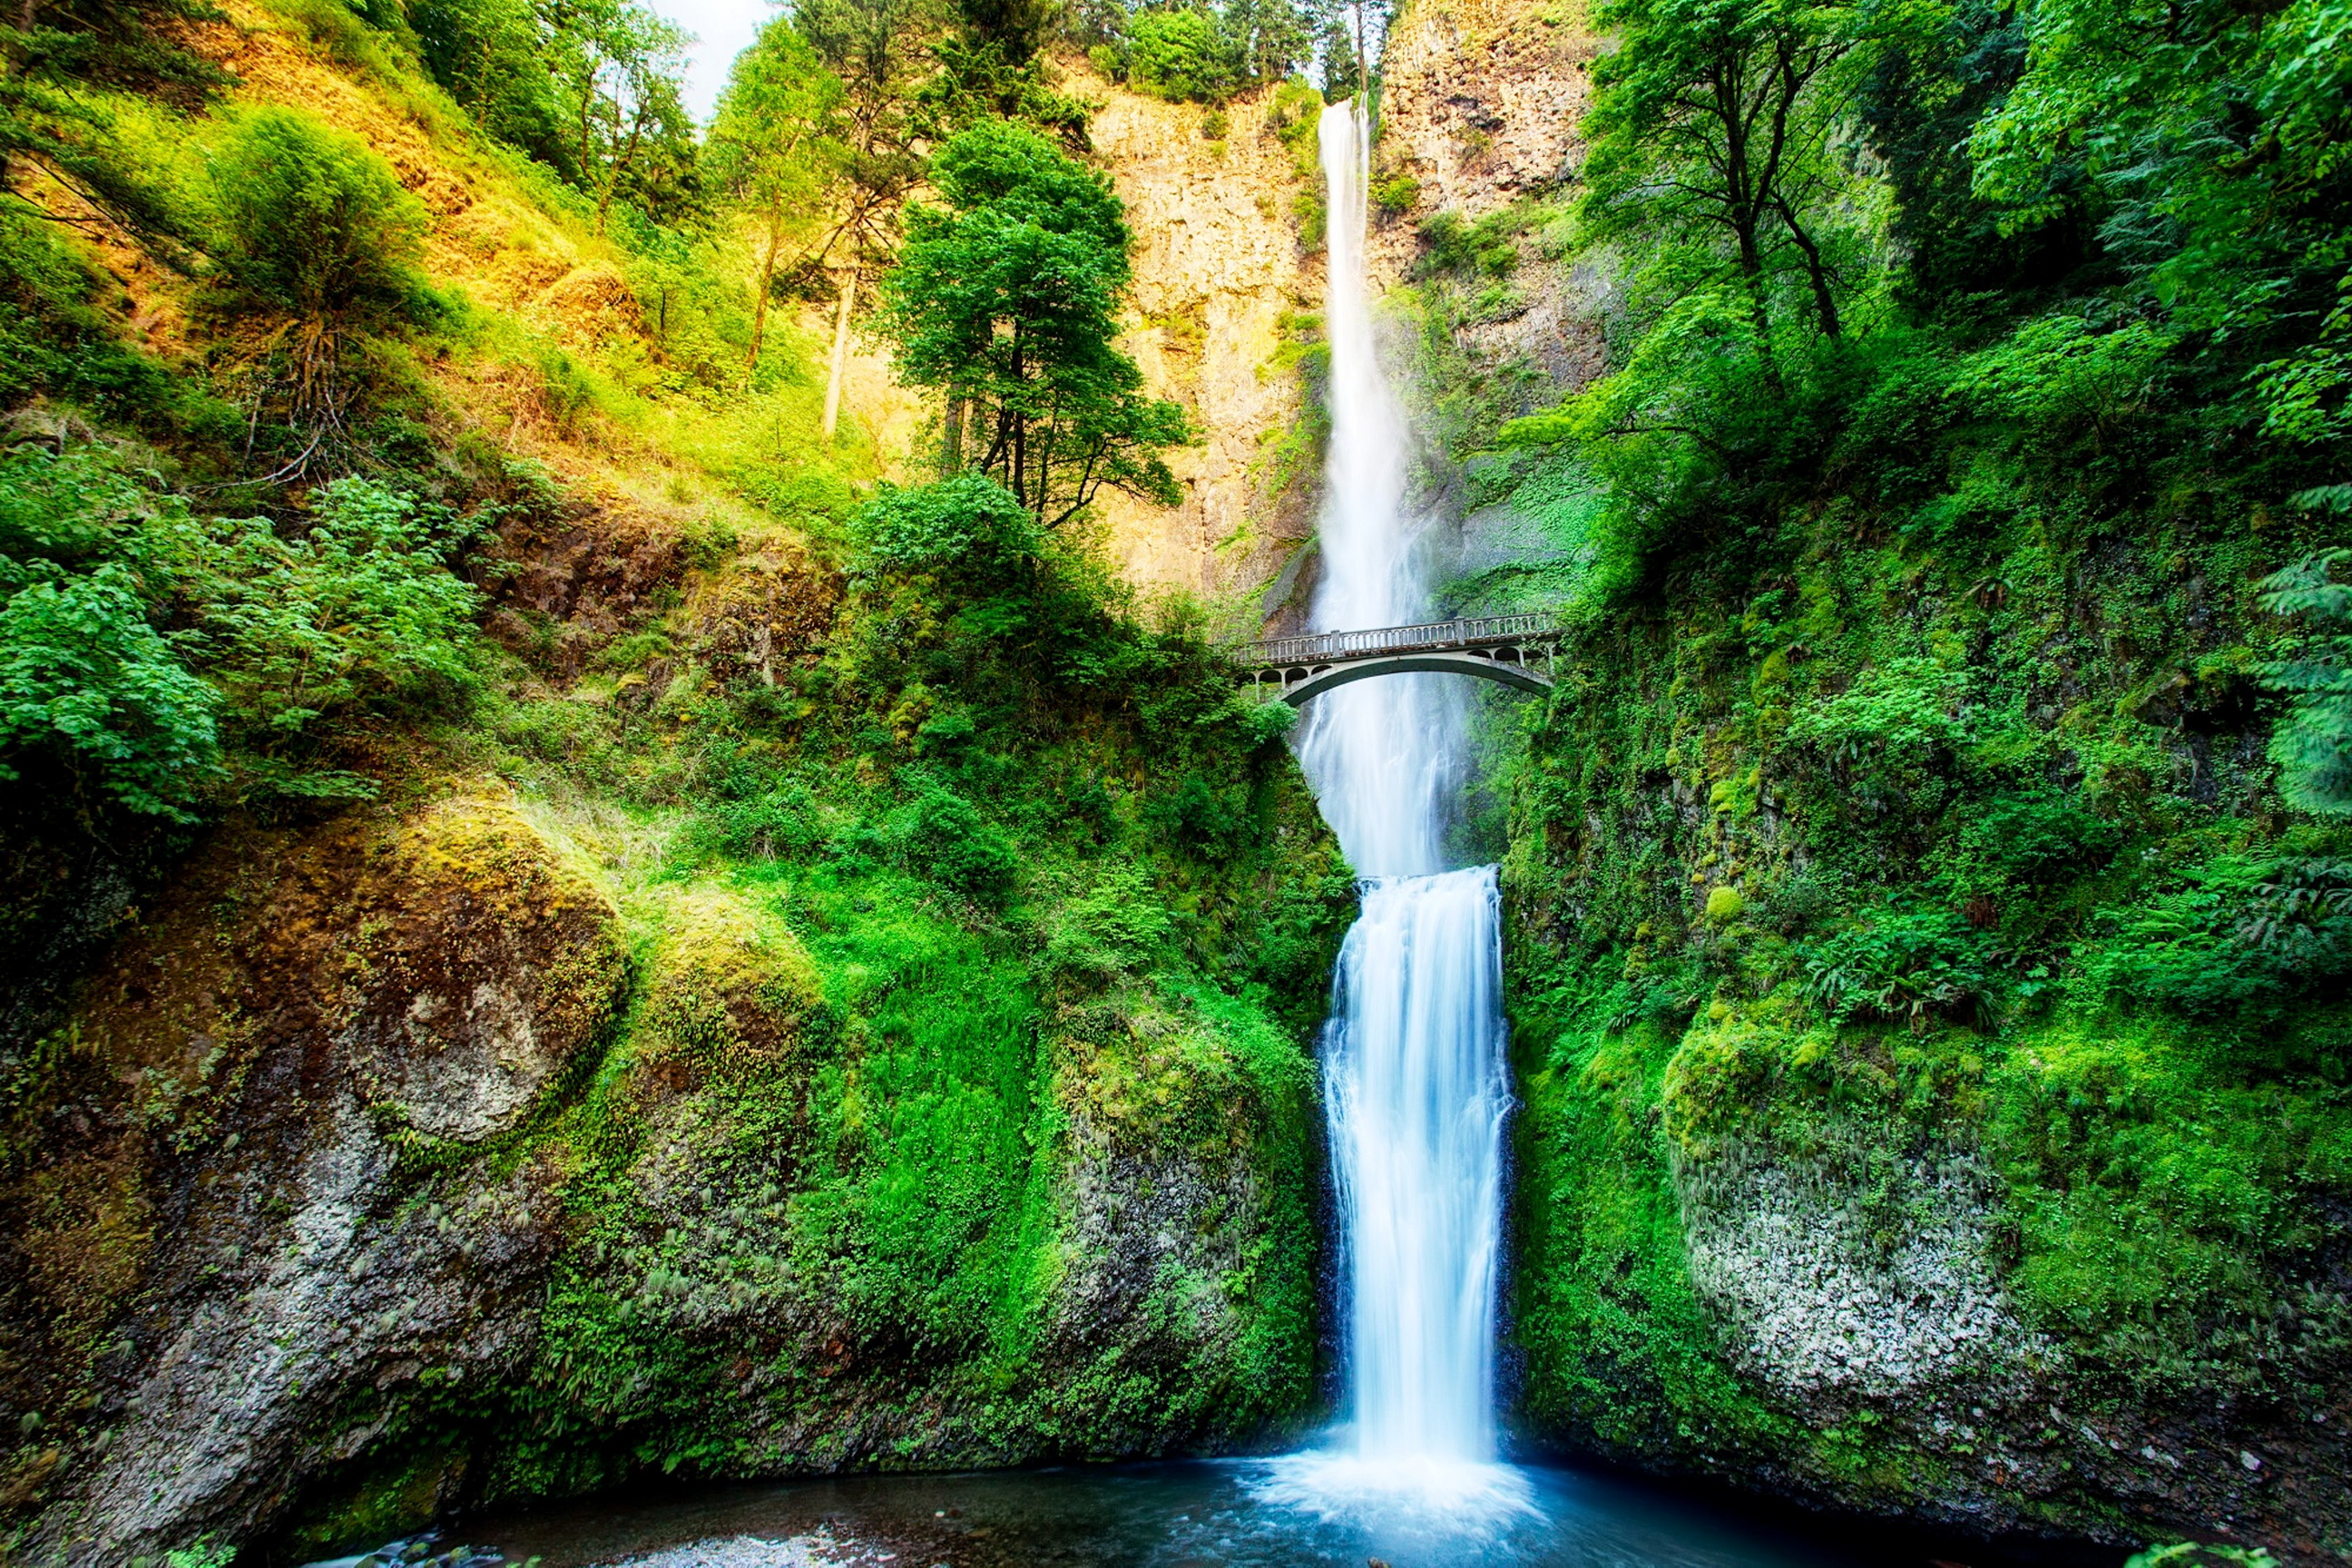 Обои на телефон самые красивые в мире. Малтнома-Фолс, штат Орегон. Водопад Малтнома Орегон. Водопад Малтона в Орегоне. Величественный водопад Малтнома (США).